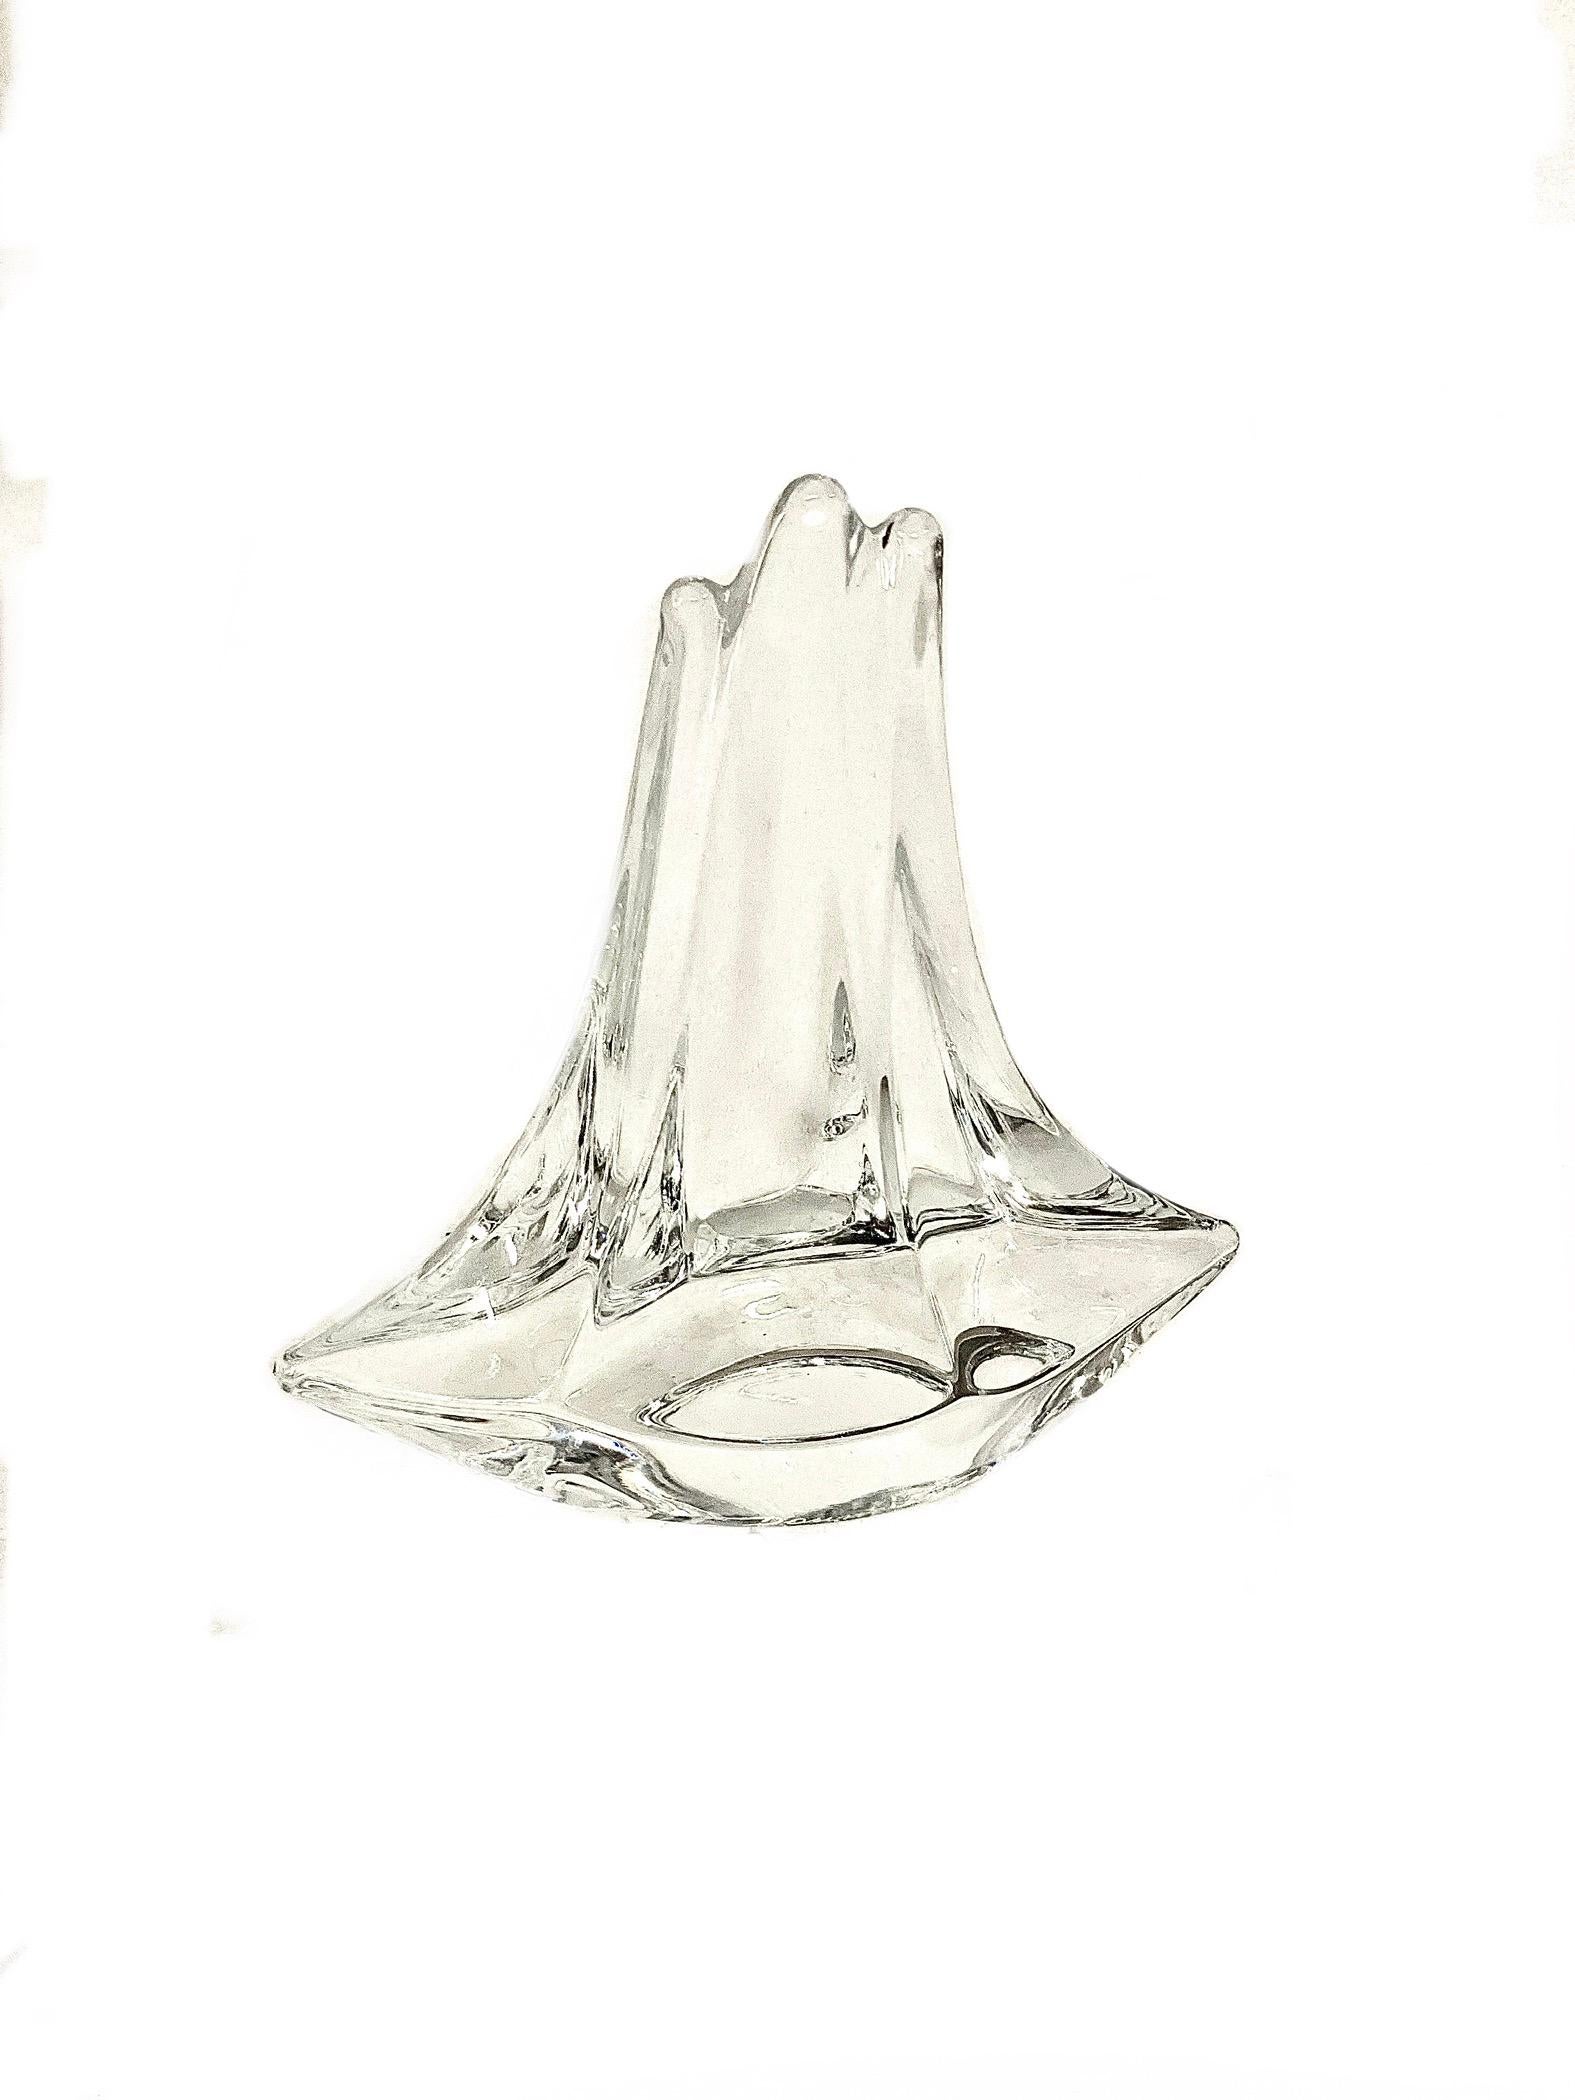 Un fascinant ornement en cristal, ou presse-papier, en forme de trois-mâts stylisé, fabriqué par le légendaire fabricant de cristal DAUM France. En excellent état, sa clarté étincelante et ses lignes abstraites capturent et reflètent la lumière de